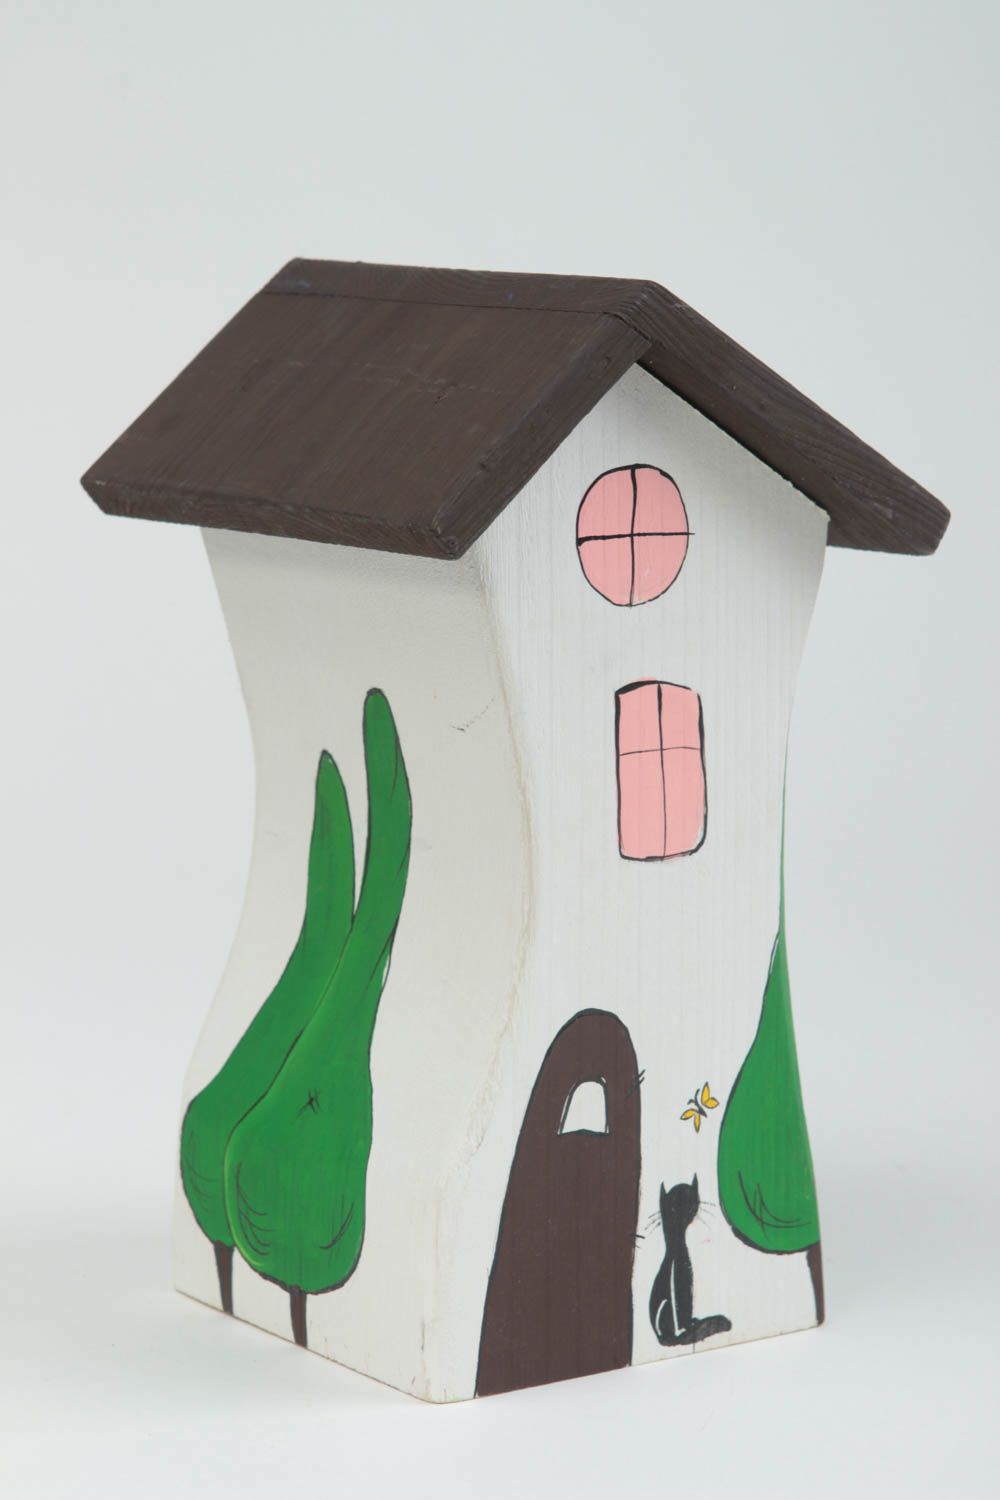 Деревянная статуэтка в виде домика небольшая красивая расписная ручной работы фото 2